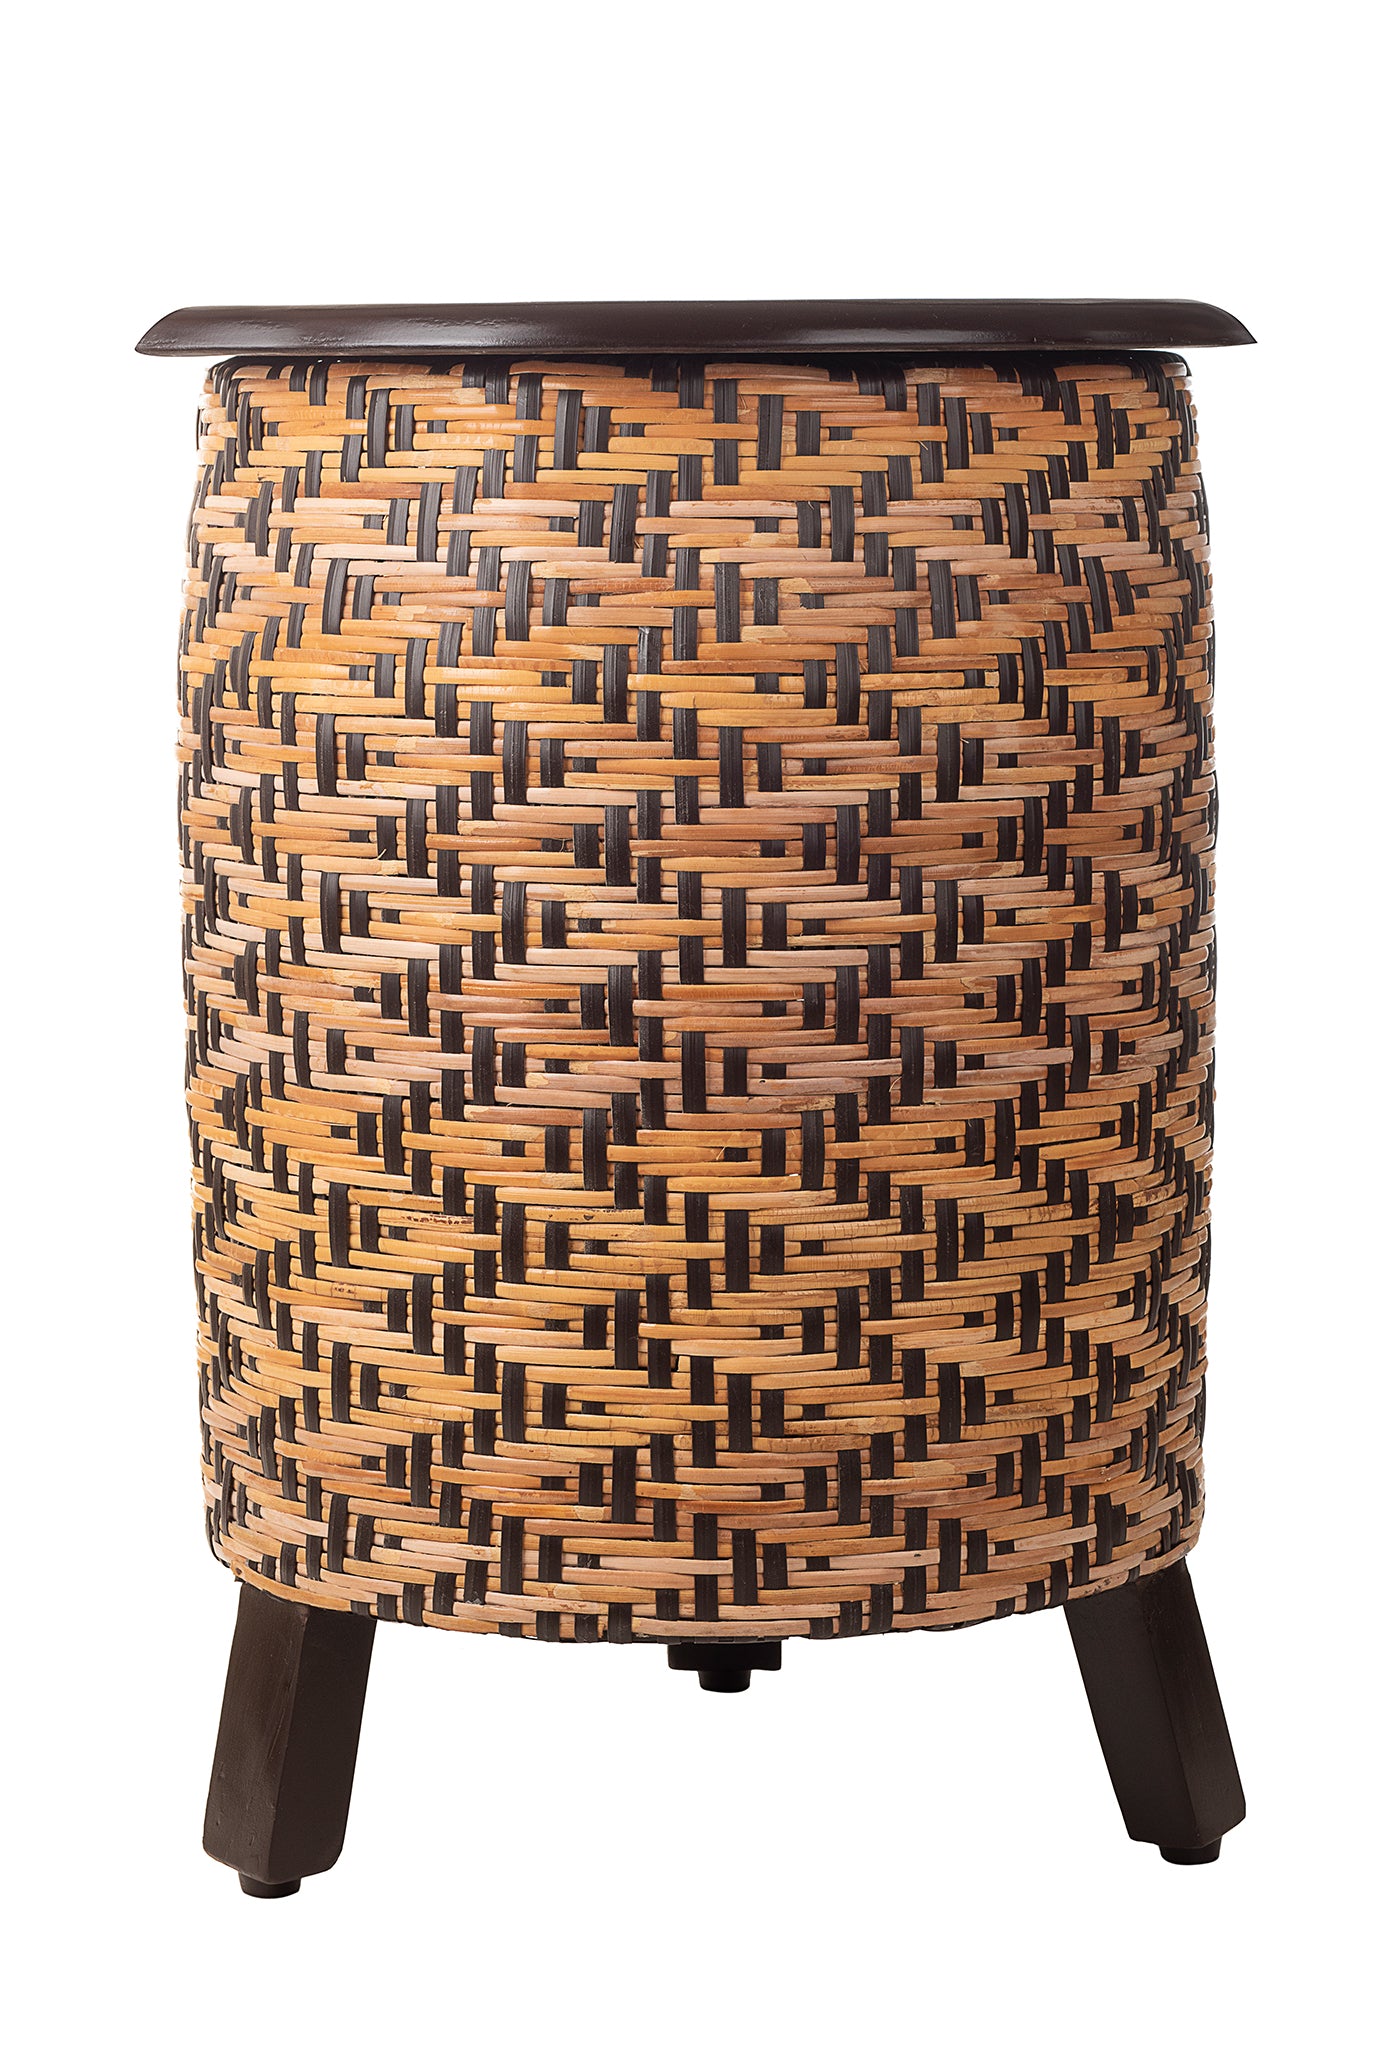 basket- storage- side table- cane weaving-teakwood frame-handcrafted-jodi